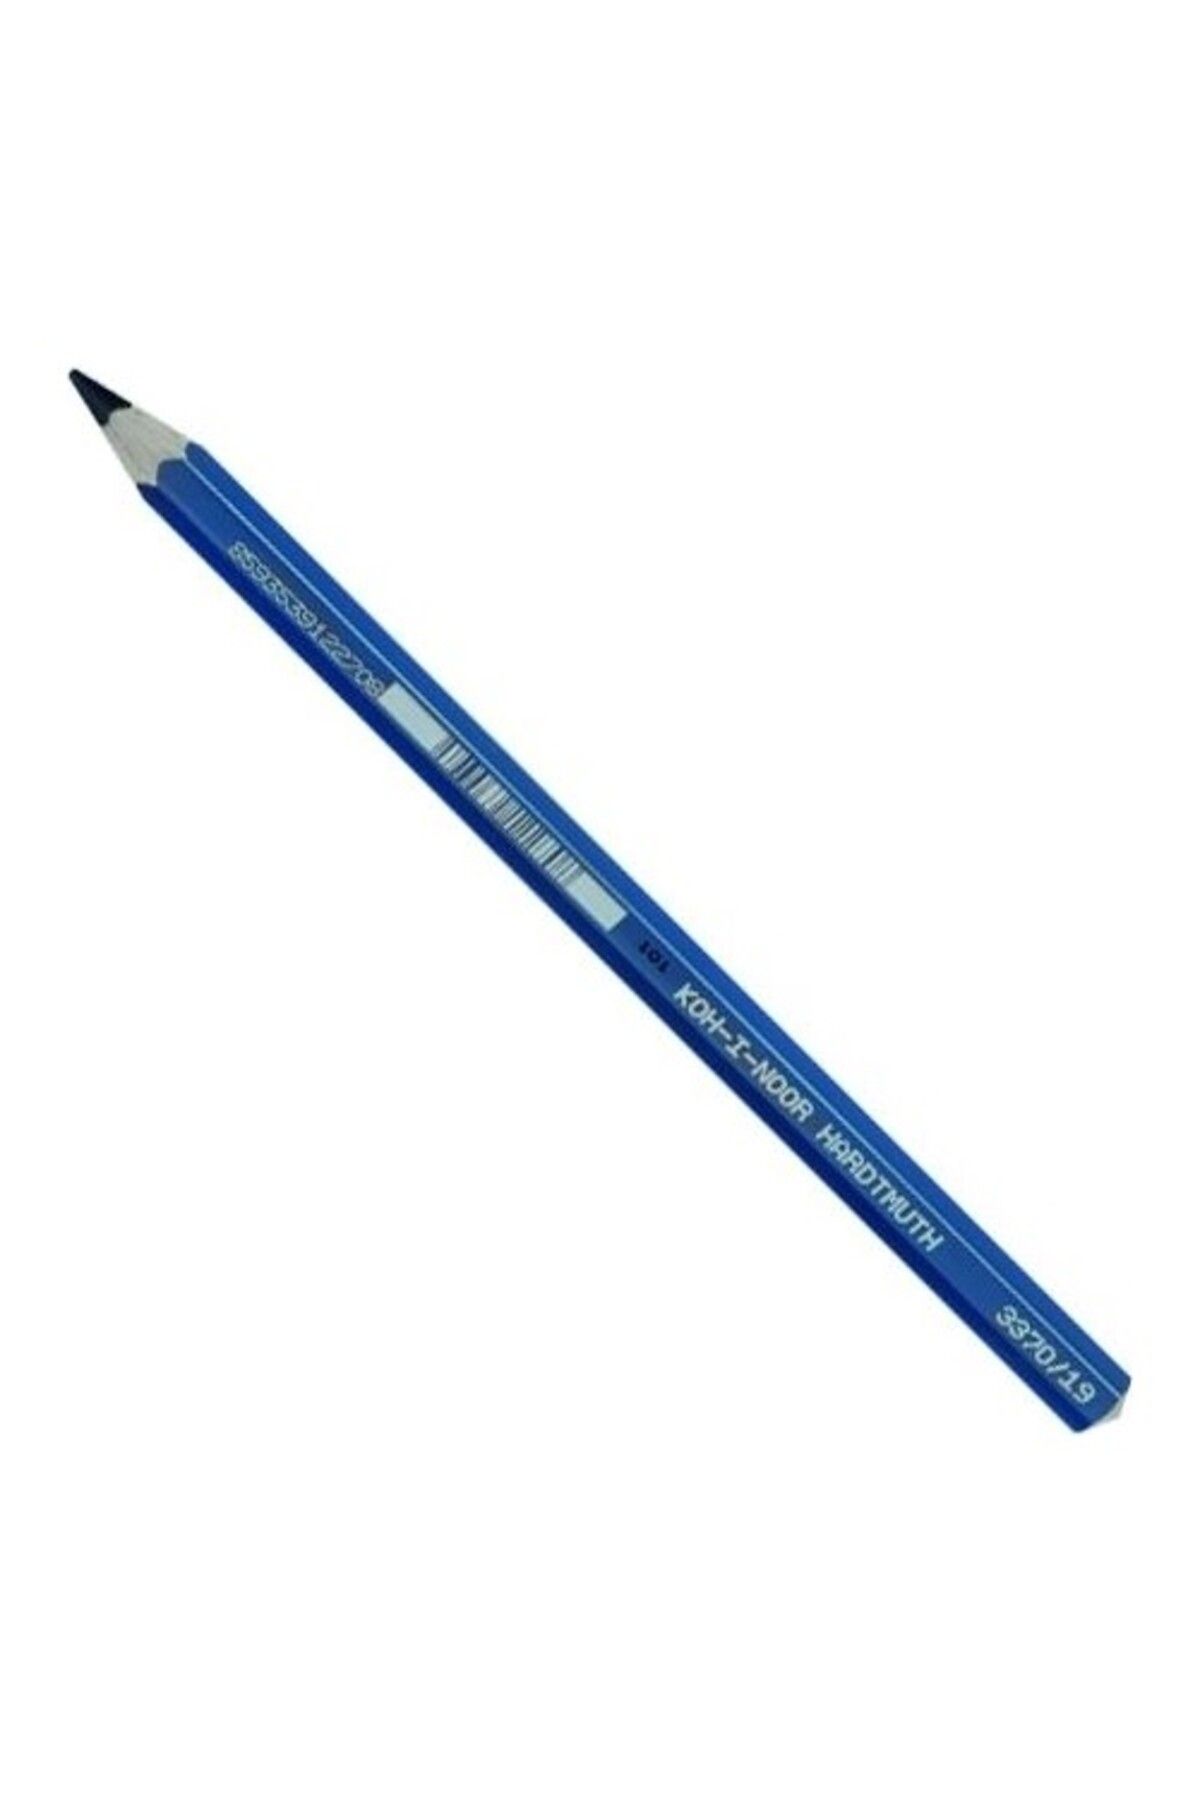 Kohinoor Jumbo Coloured Pencil (12 Lİ) Dark Blue 3370